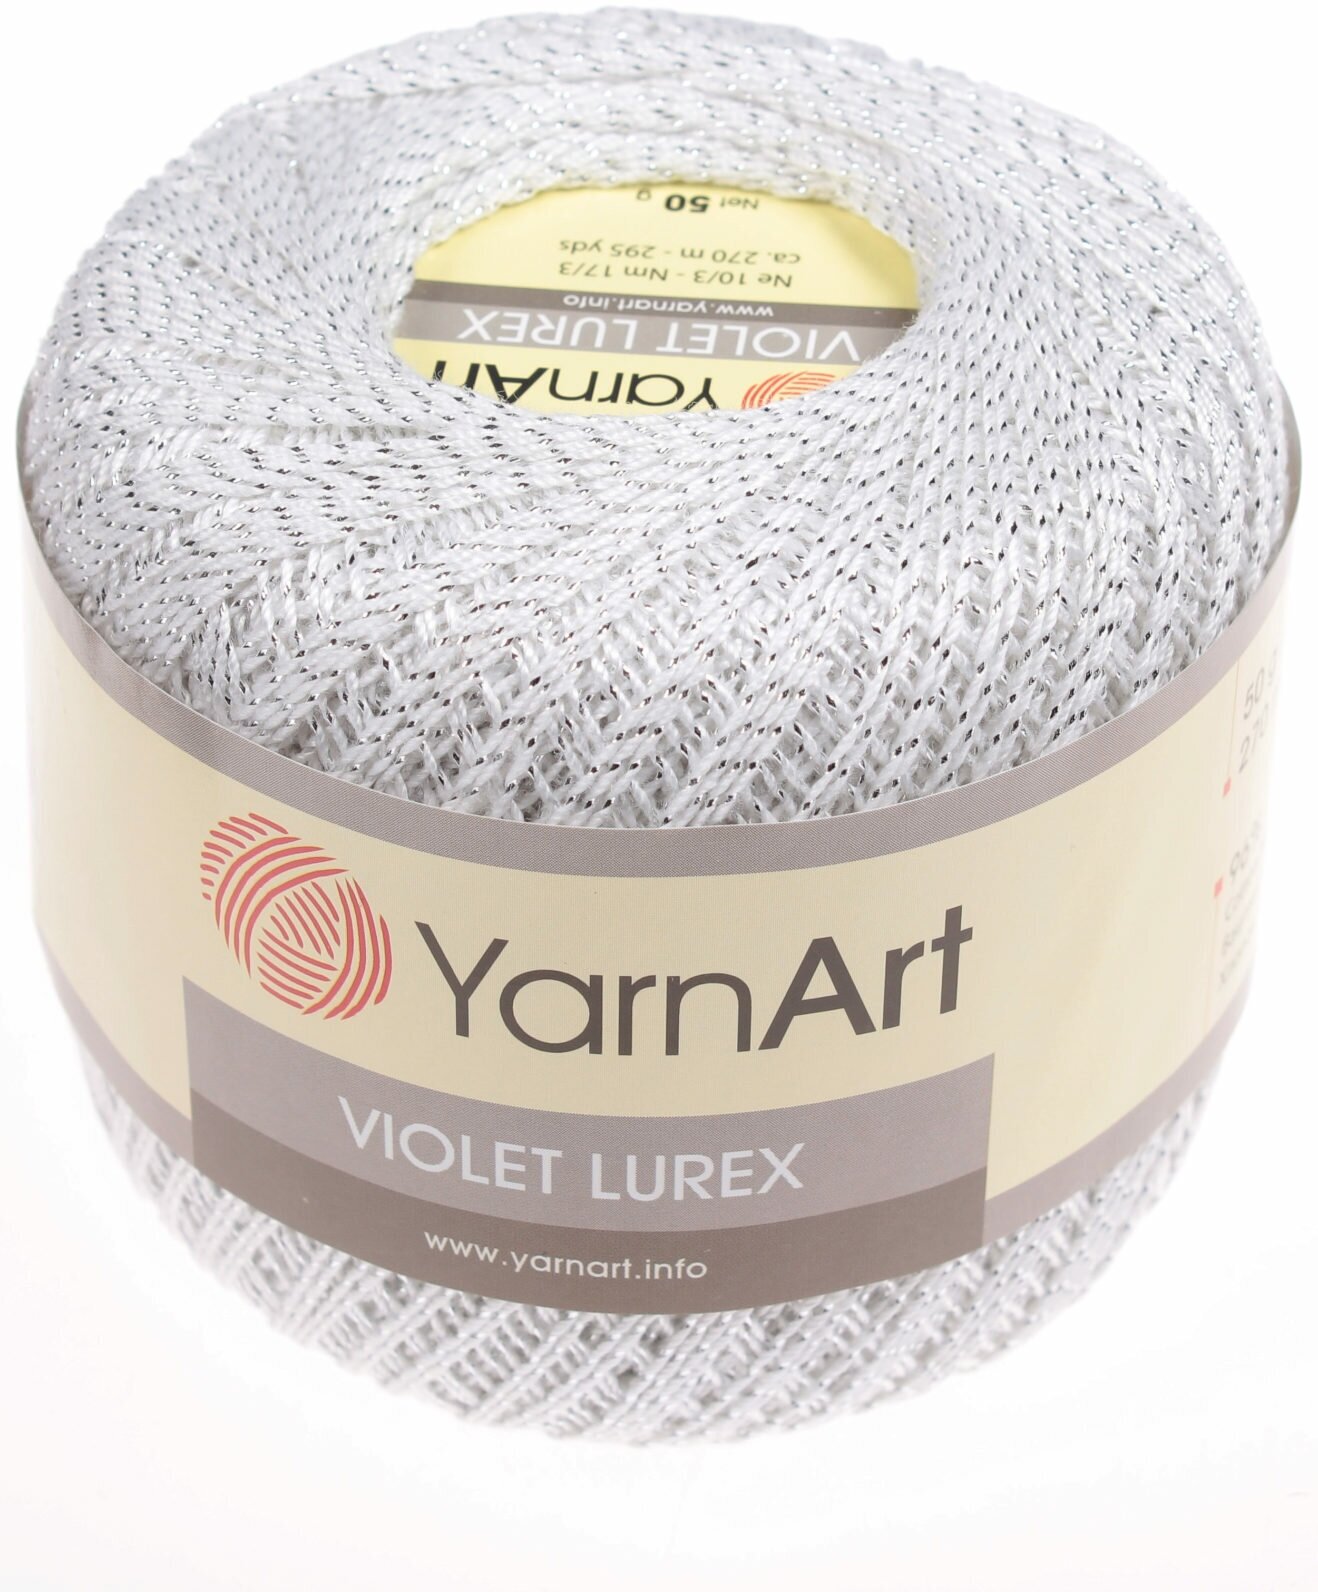 Пряжа YarnArt Violet Lurex белый/серебро (1000), 96%мерсеризованный хлопок/4%металлик, 270м, 50г, 1шт